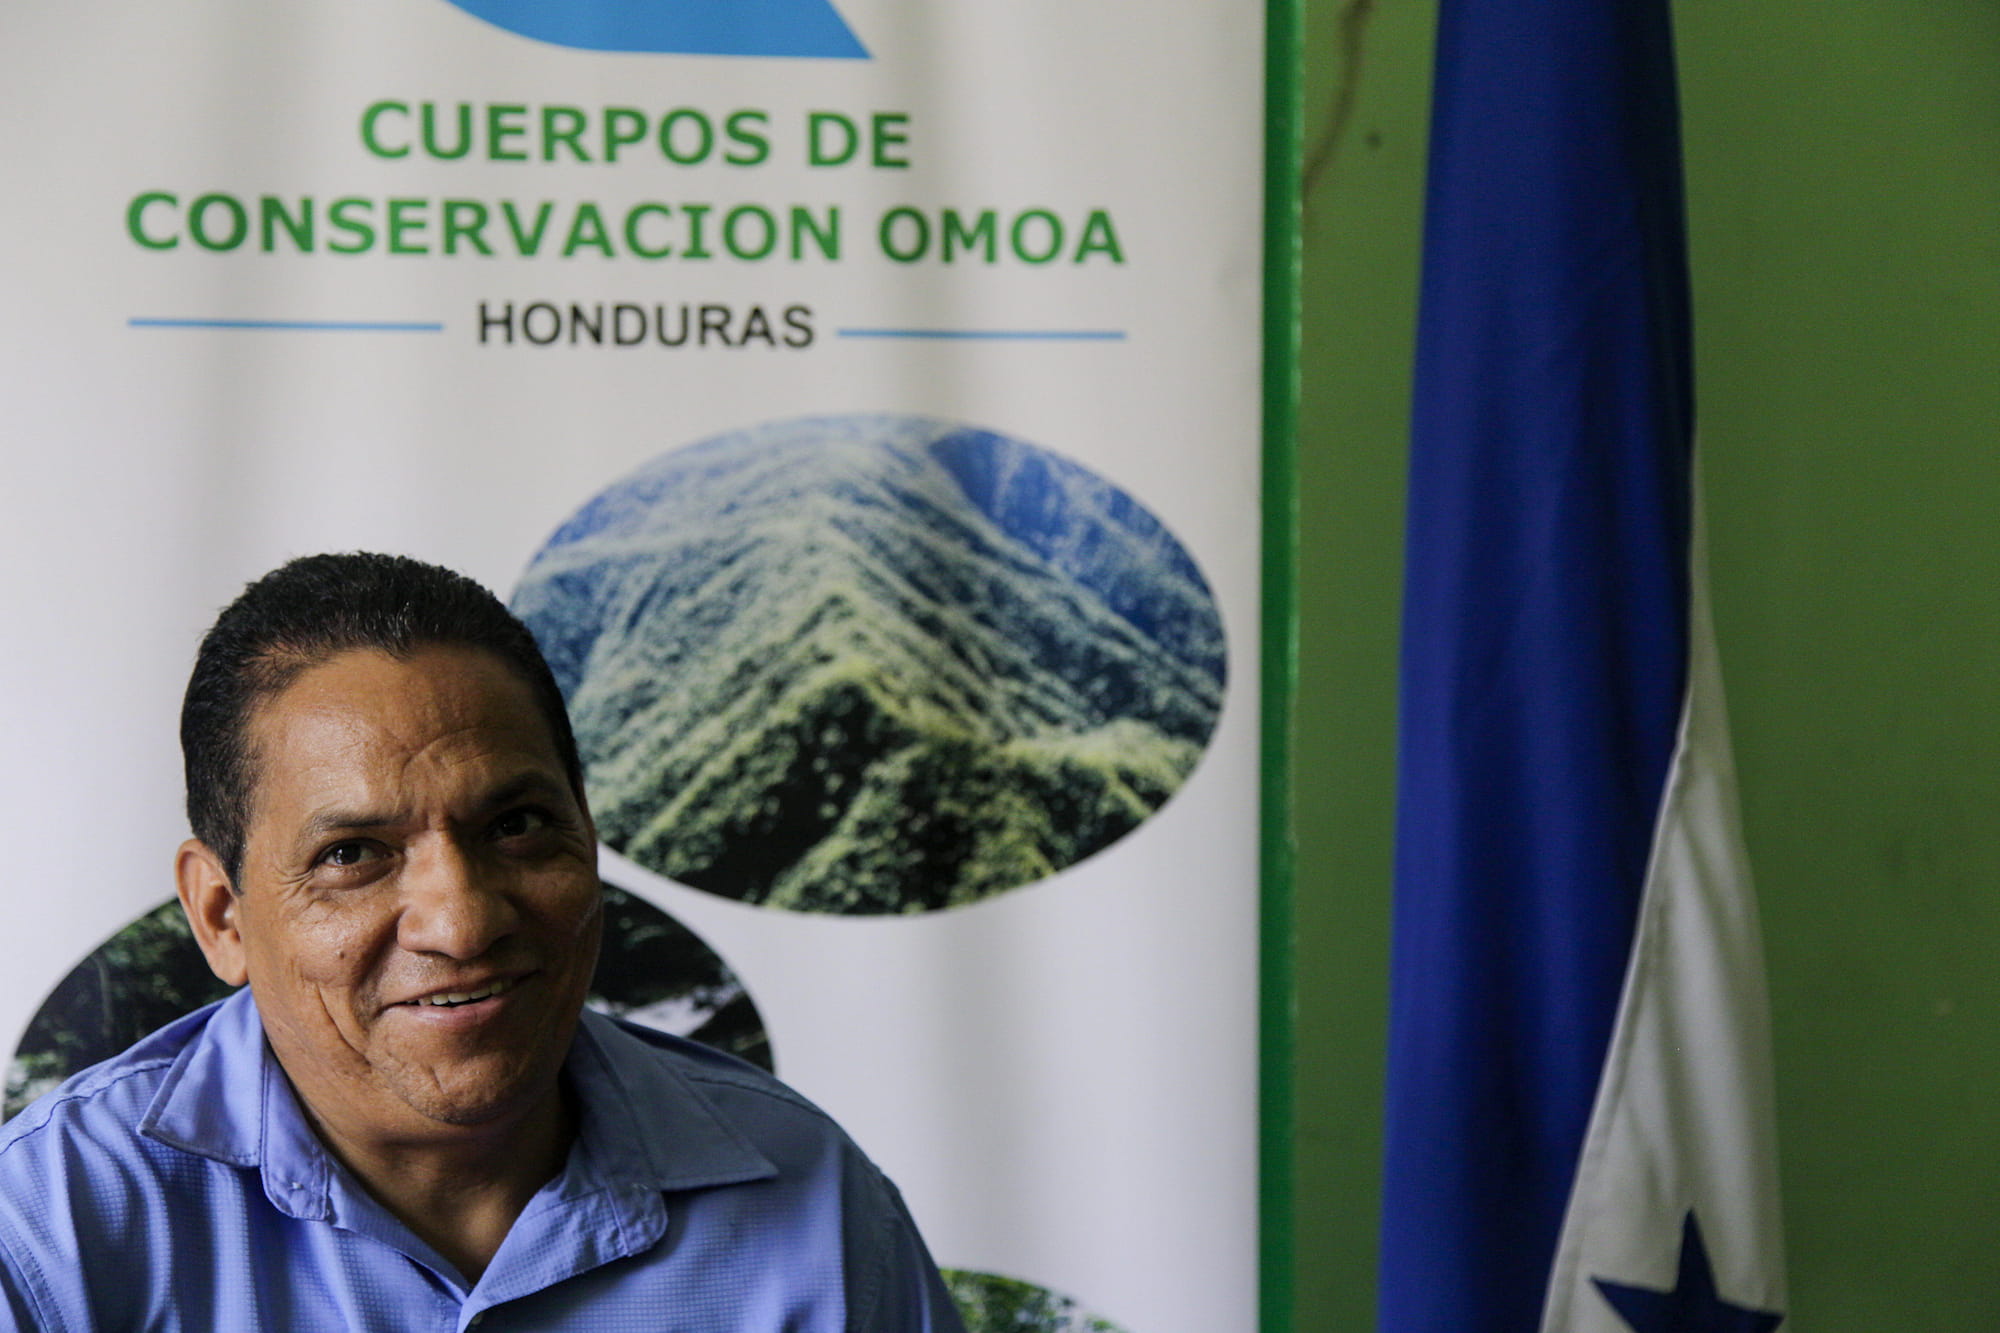 Gustavo Cabrera, director de los Cuerpos de Conservación de Omoa (CCO). Omoa, Cortés, Honduras.